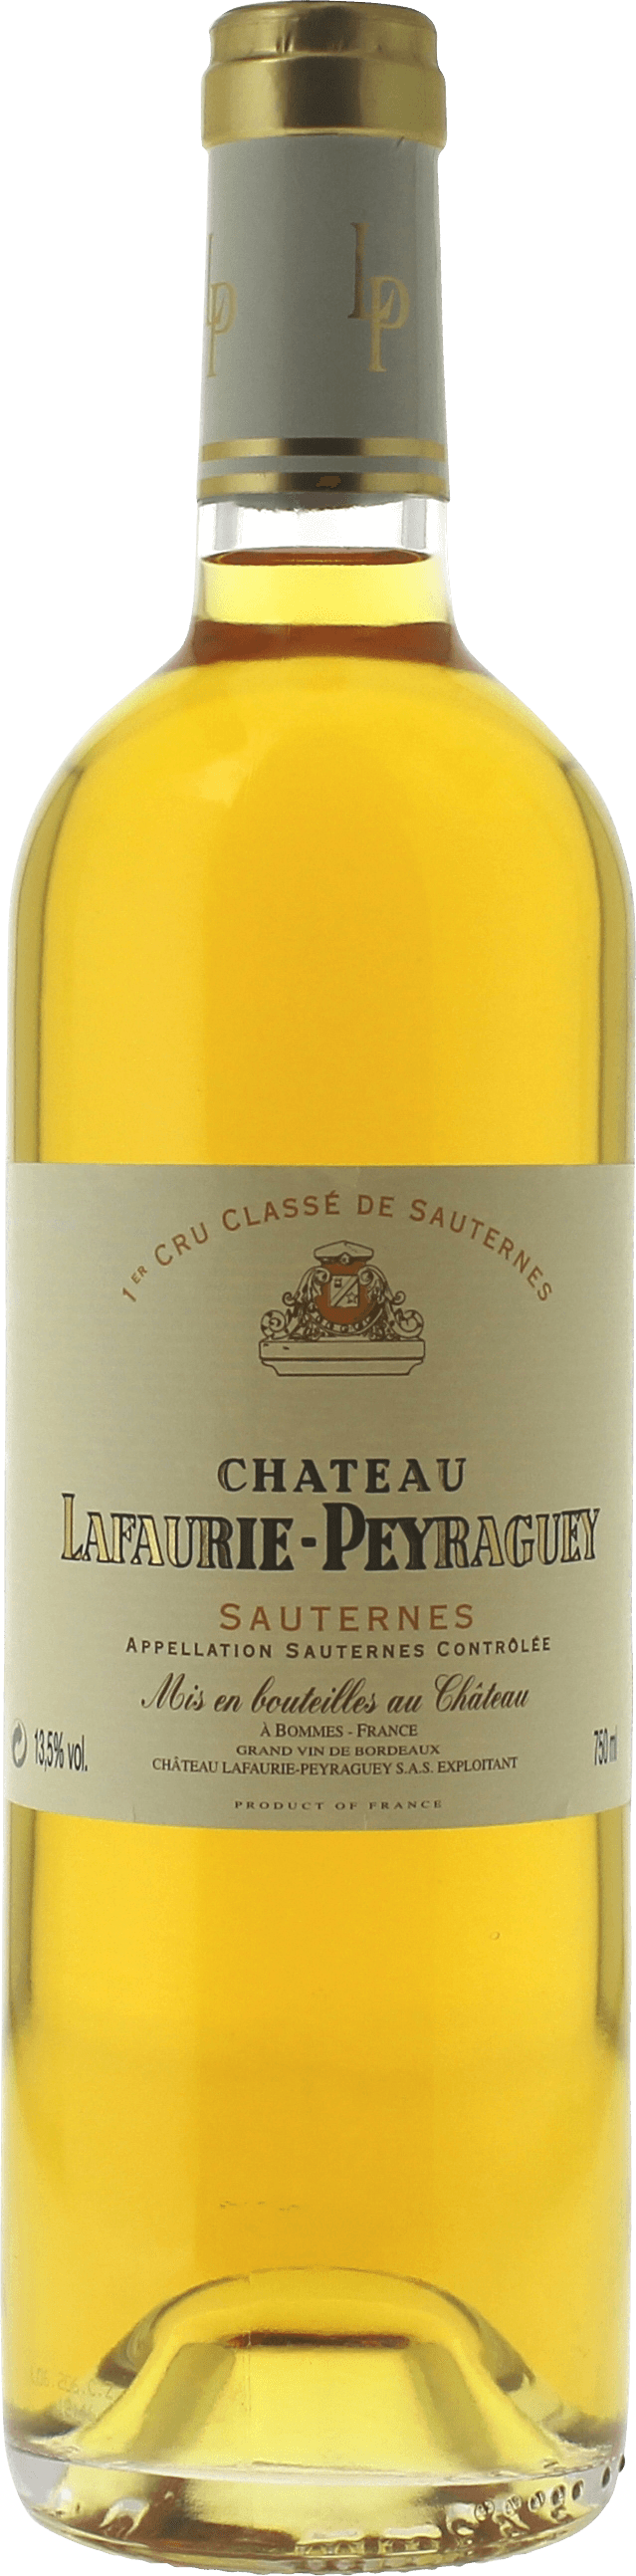 Lafaurie peyraguey 1999  Sauternes, Bordeaux blanc